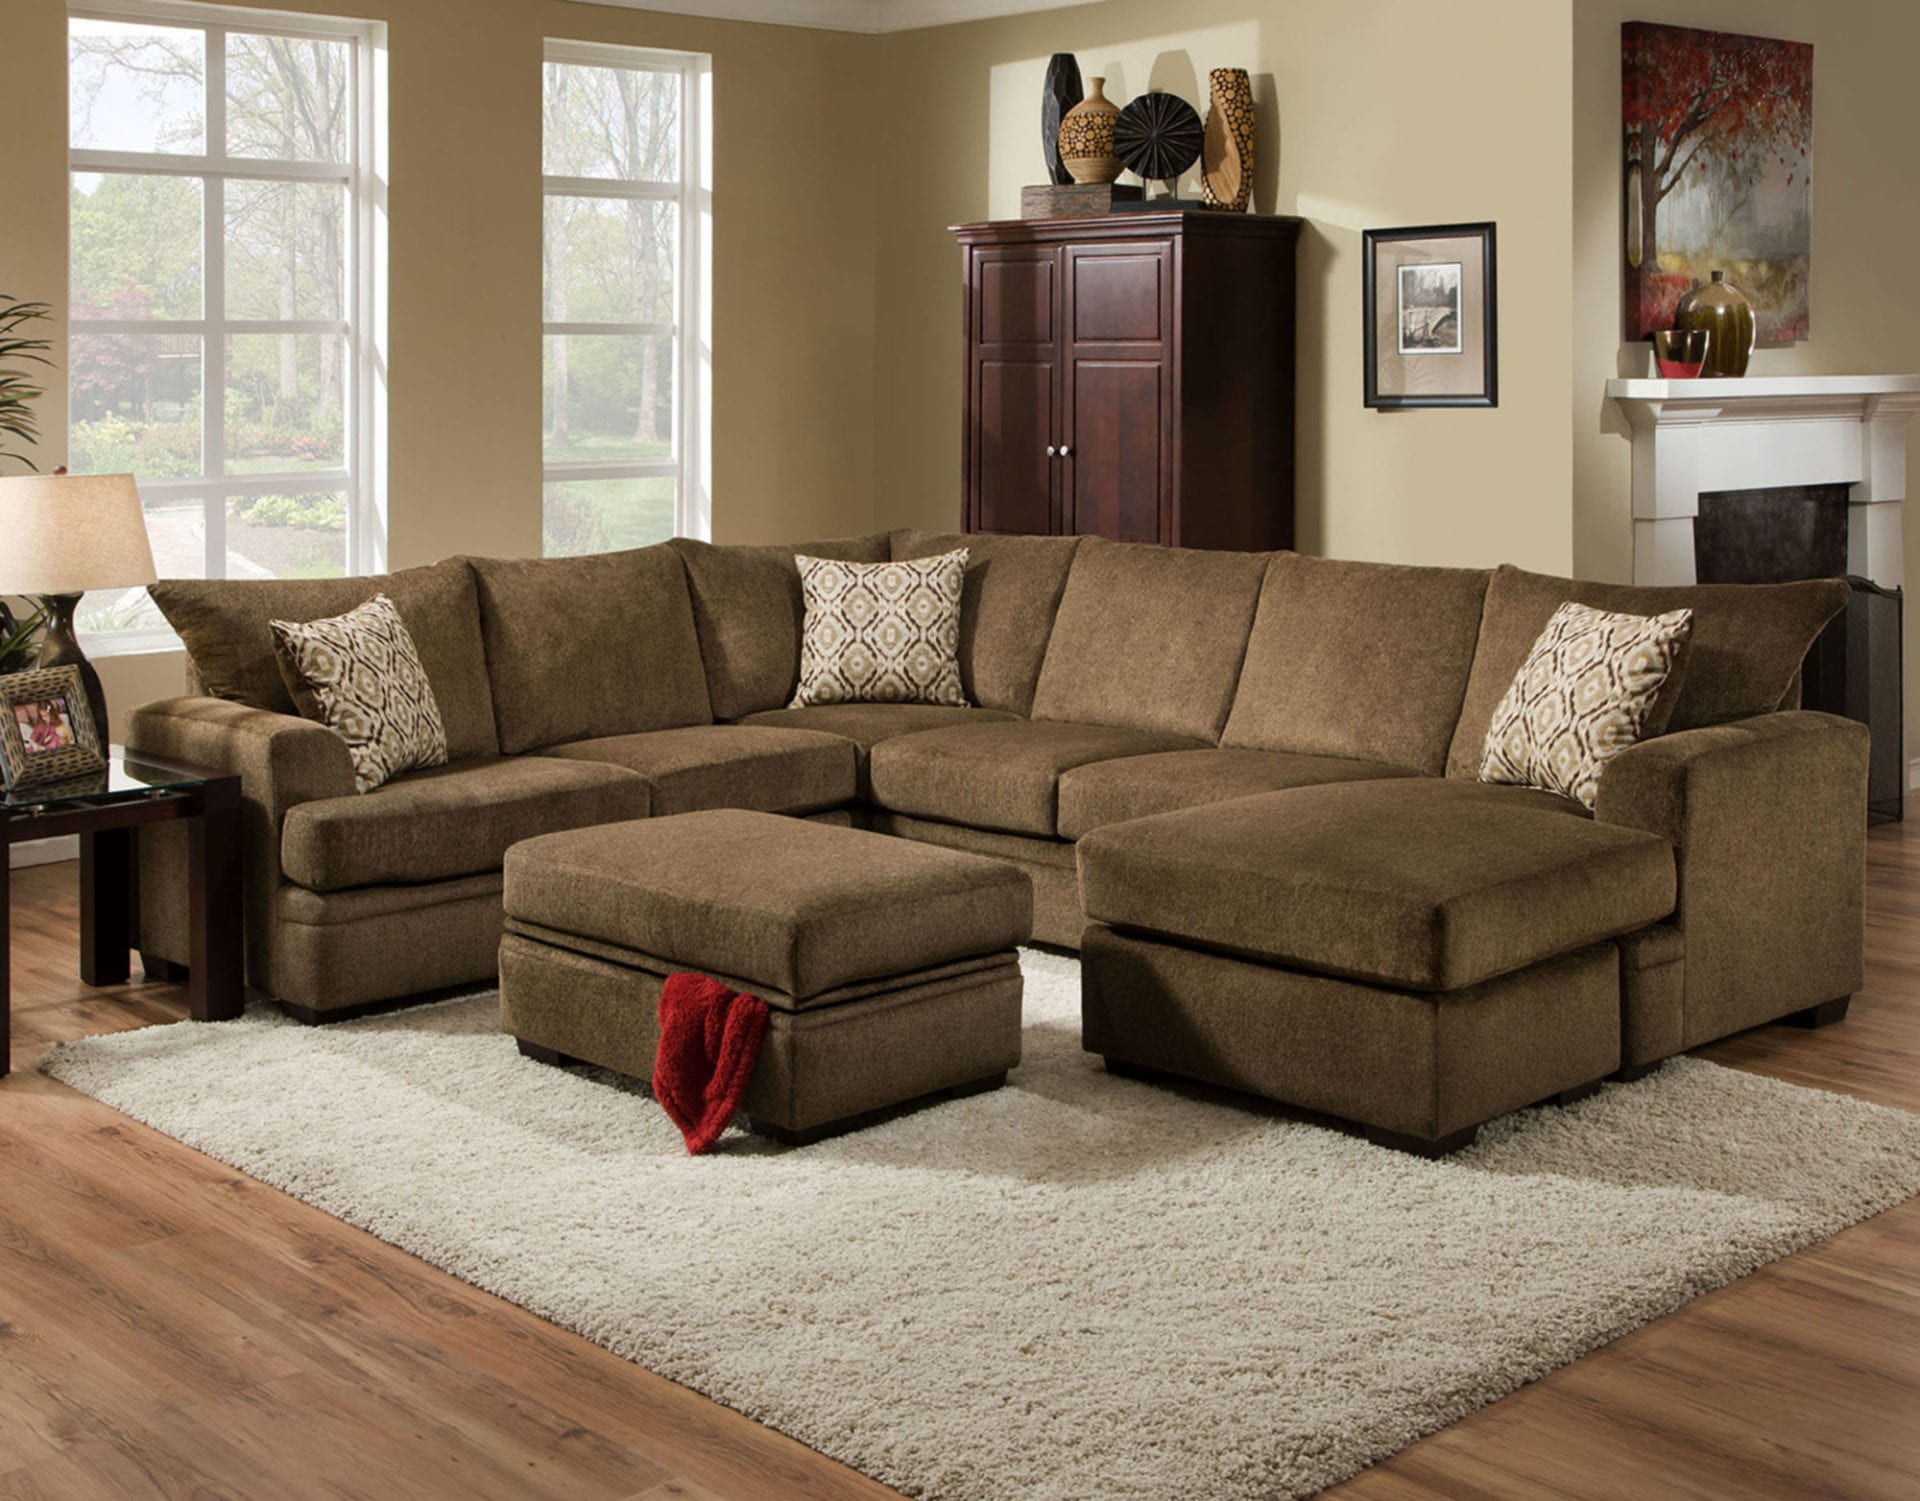 Living Room Total Furniture